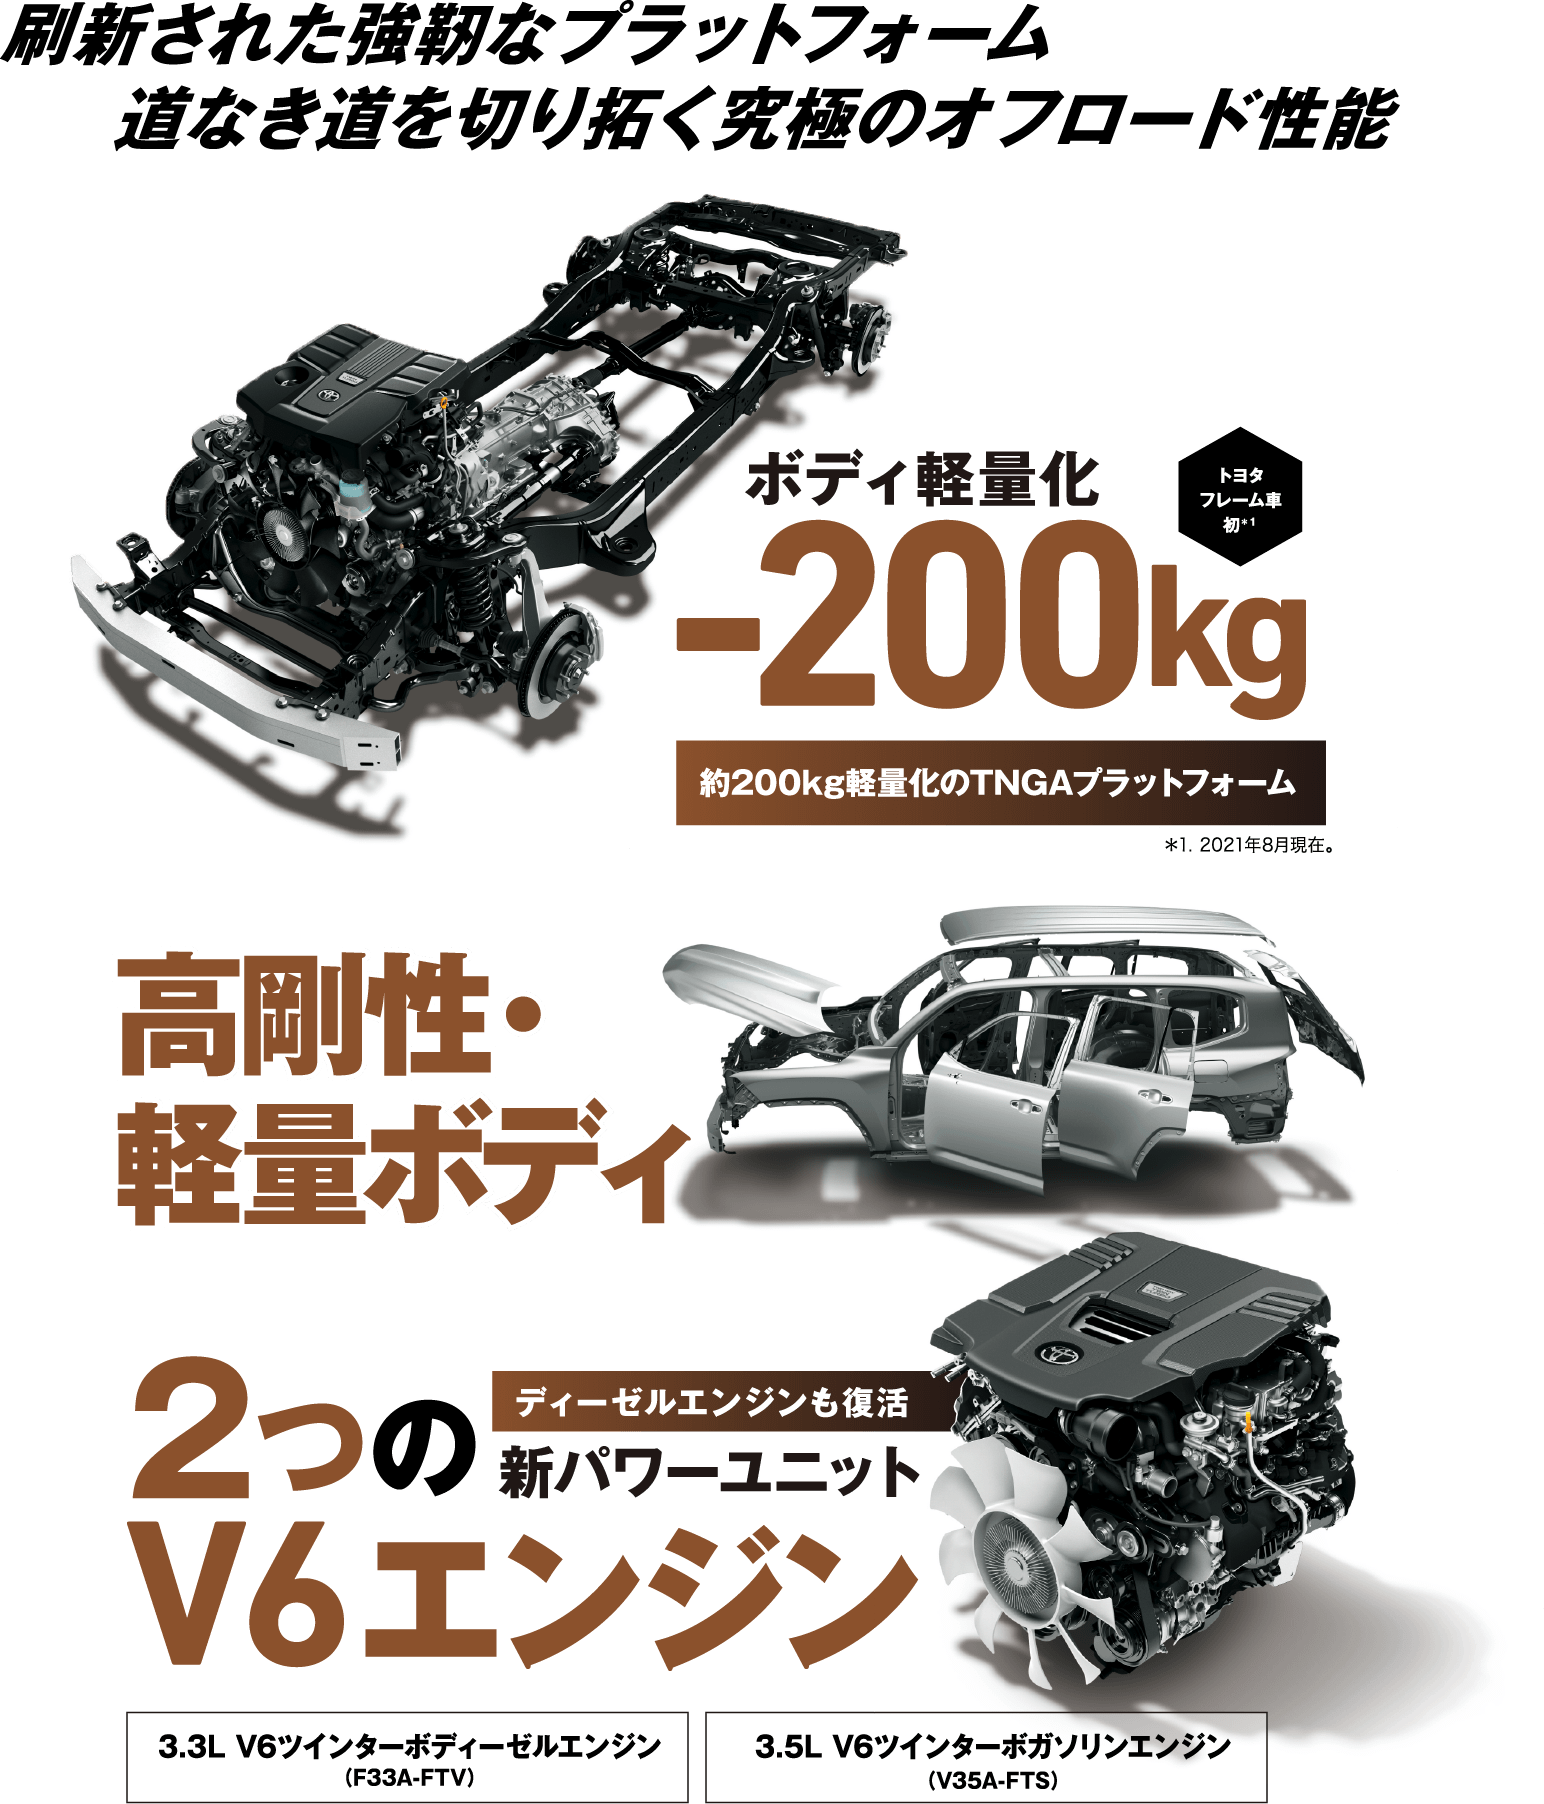 刷新された強靭なプラットフォーム 道なき道を切り拓く究極のオフロード性能［トヨタフレーム車初＊１］ボディ軽量化-200kg 約200kg軽量化のTNGAプラットフォーム ＊1. 2021年8月現在。高剛性・軽量ボディ 2つのV6エンジン ディーゼルエンジンも復活 新パワーユニット 3.3L V6ツインターボディーゼルエンジン（F33A-FTV） 3.5L V6ツインターボガソリンエンジン（V35A-FTS）